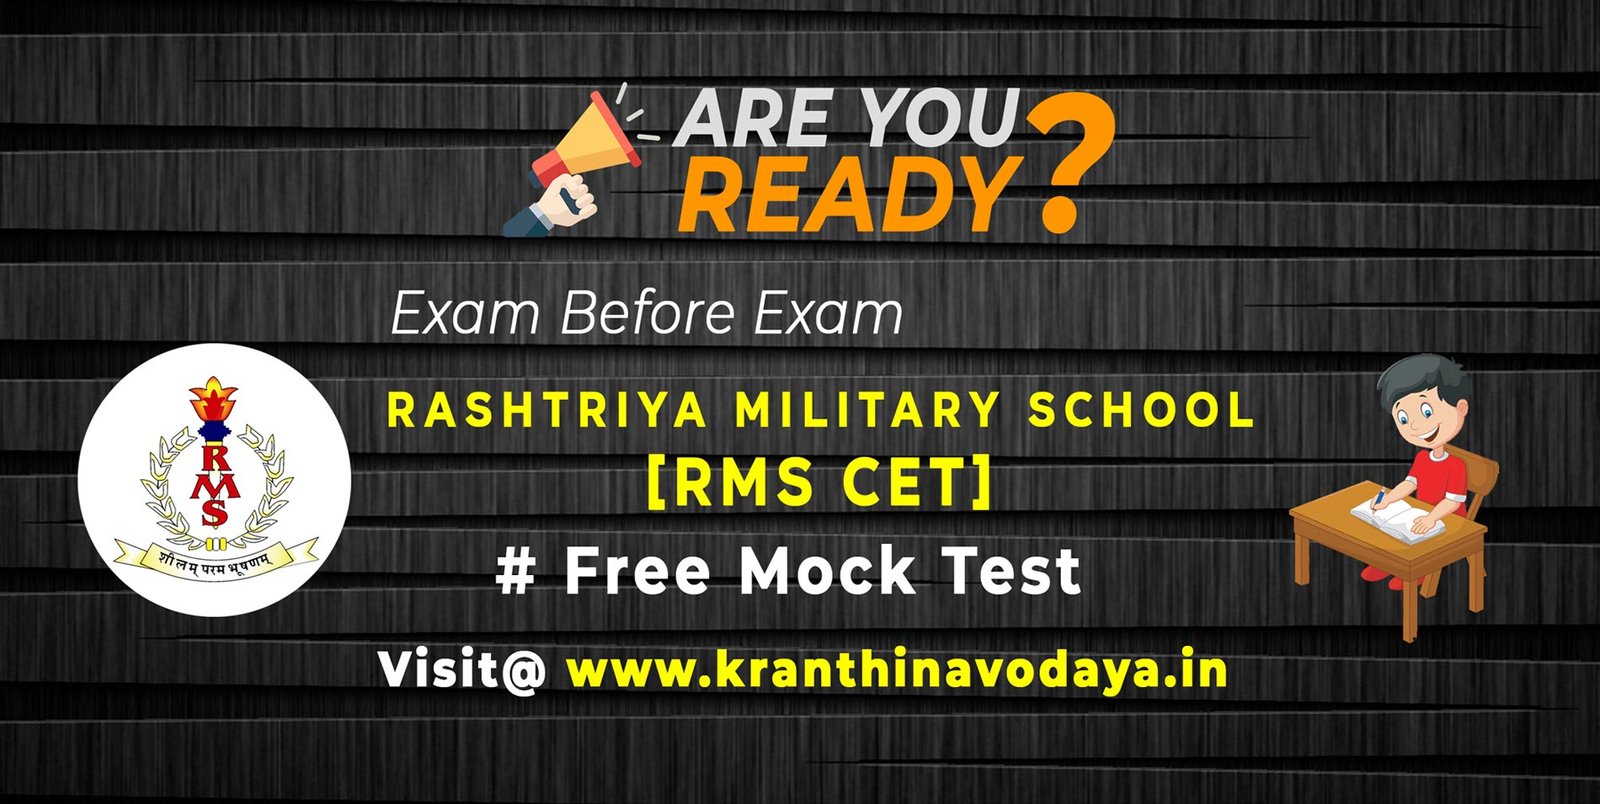 Rashtriya Military School Entrance Exam (RMS CET) Free Mock Test